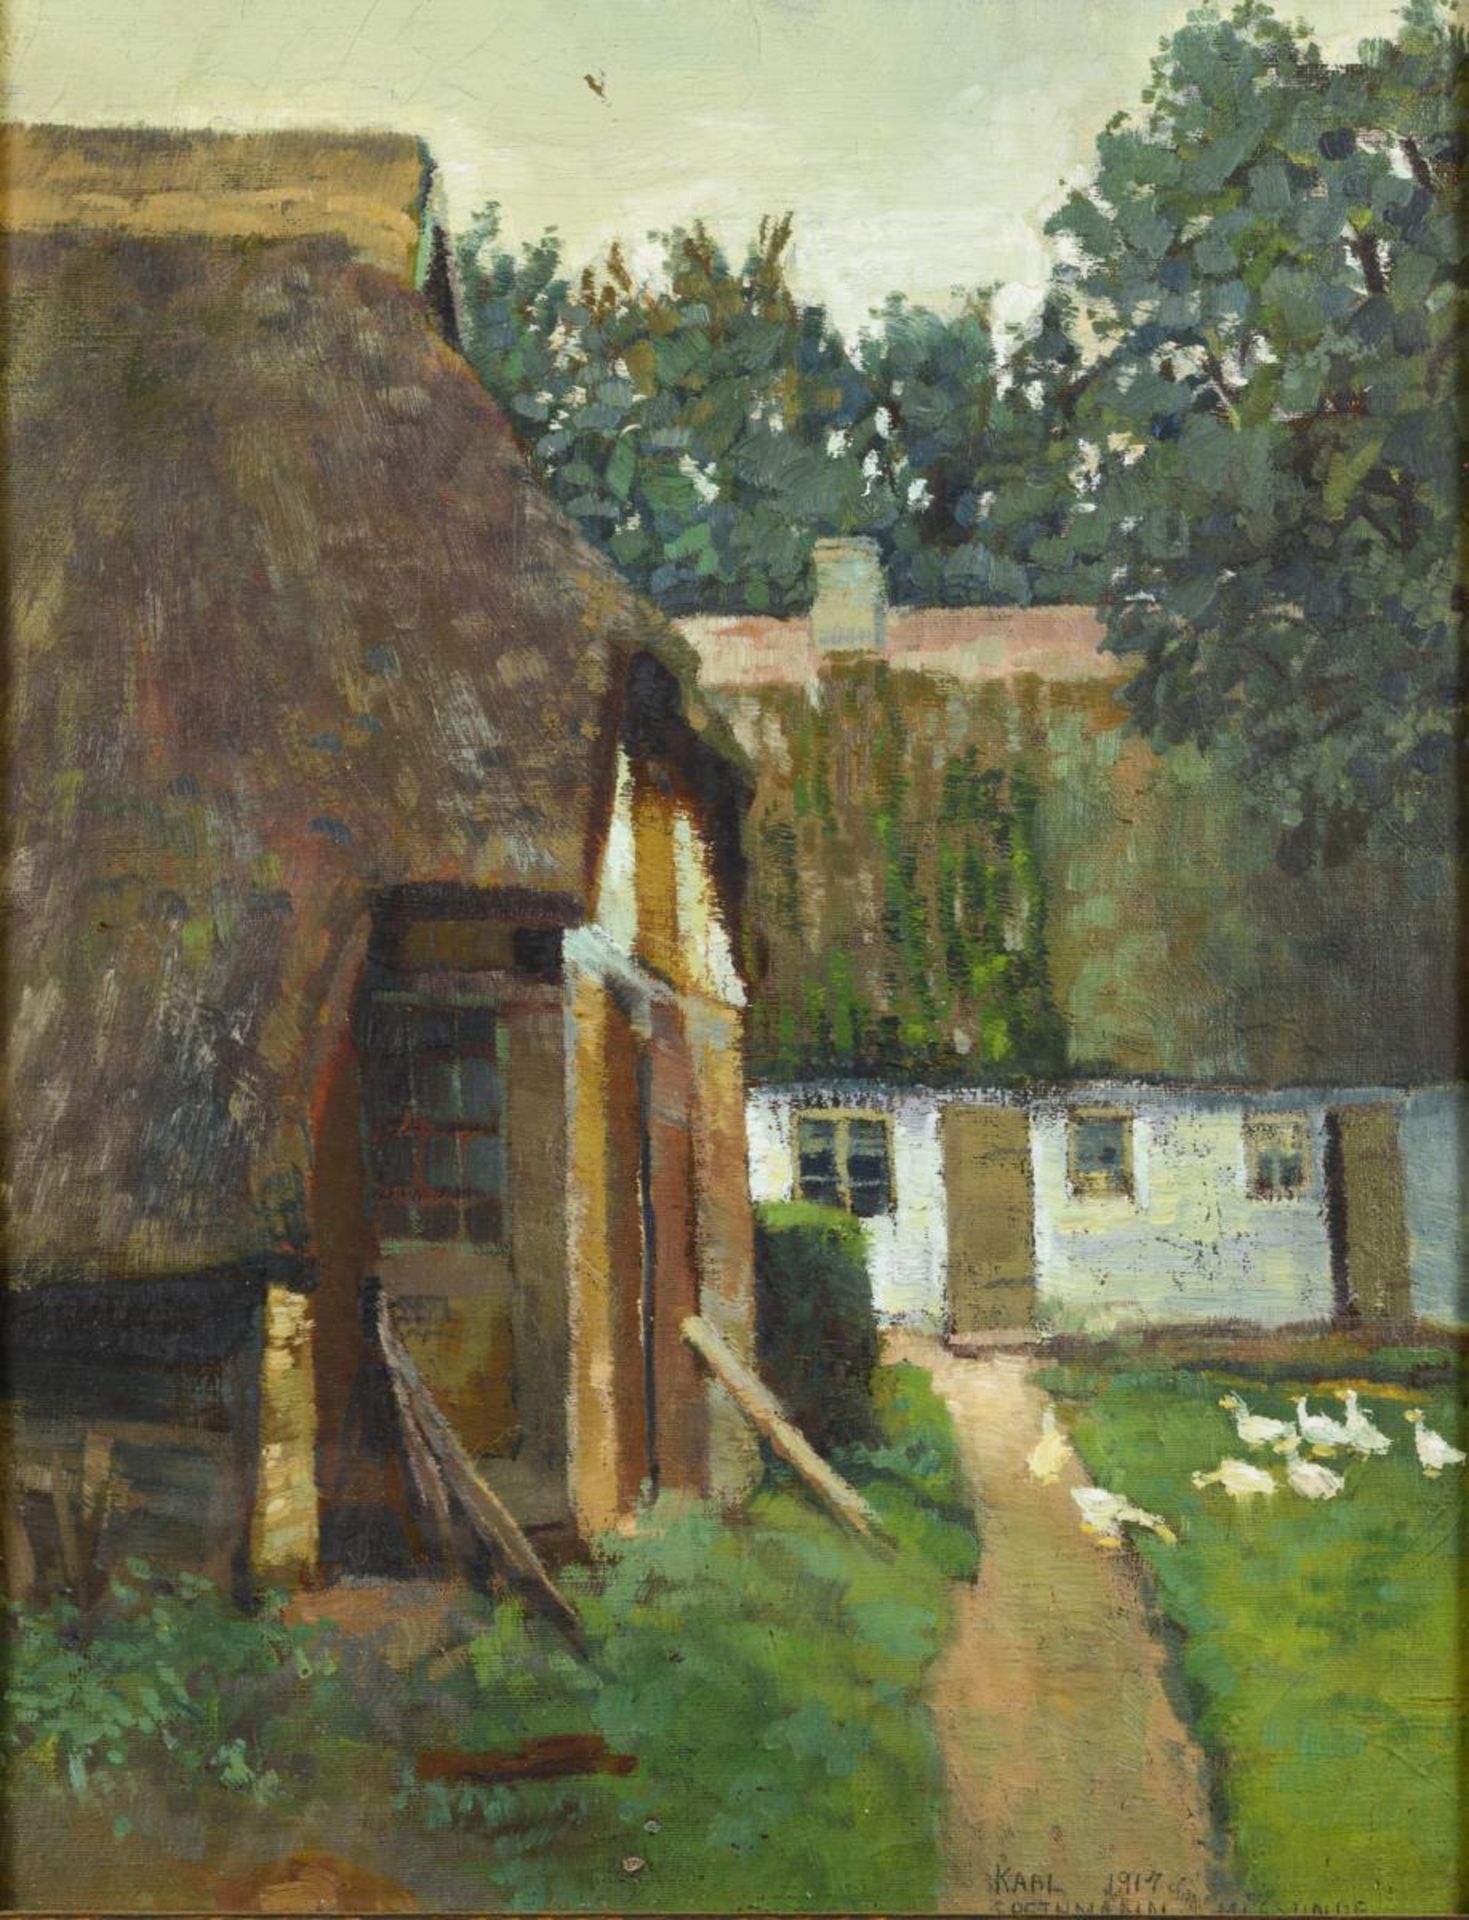 SPETHMANN, Karl (1888 Altona - 1944 Hamburg). Bauernhof mit Enten.